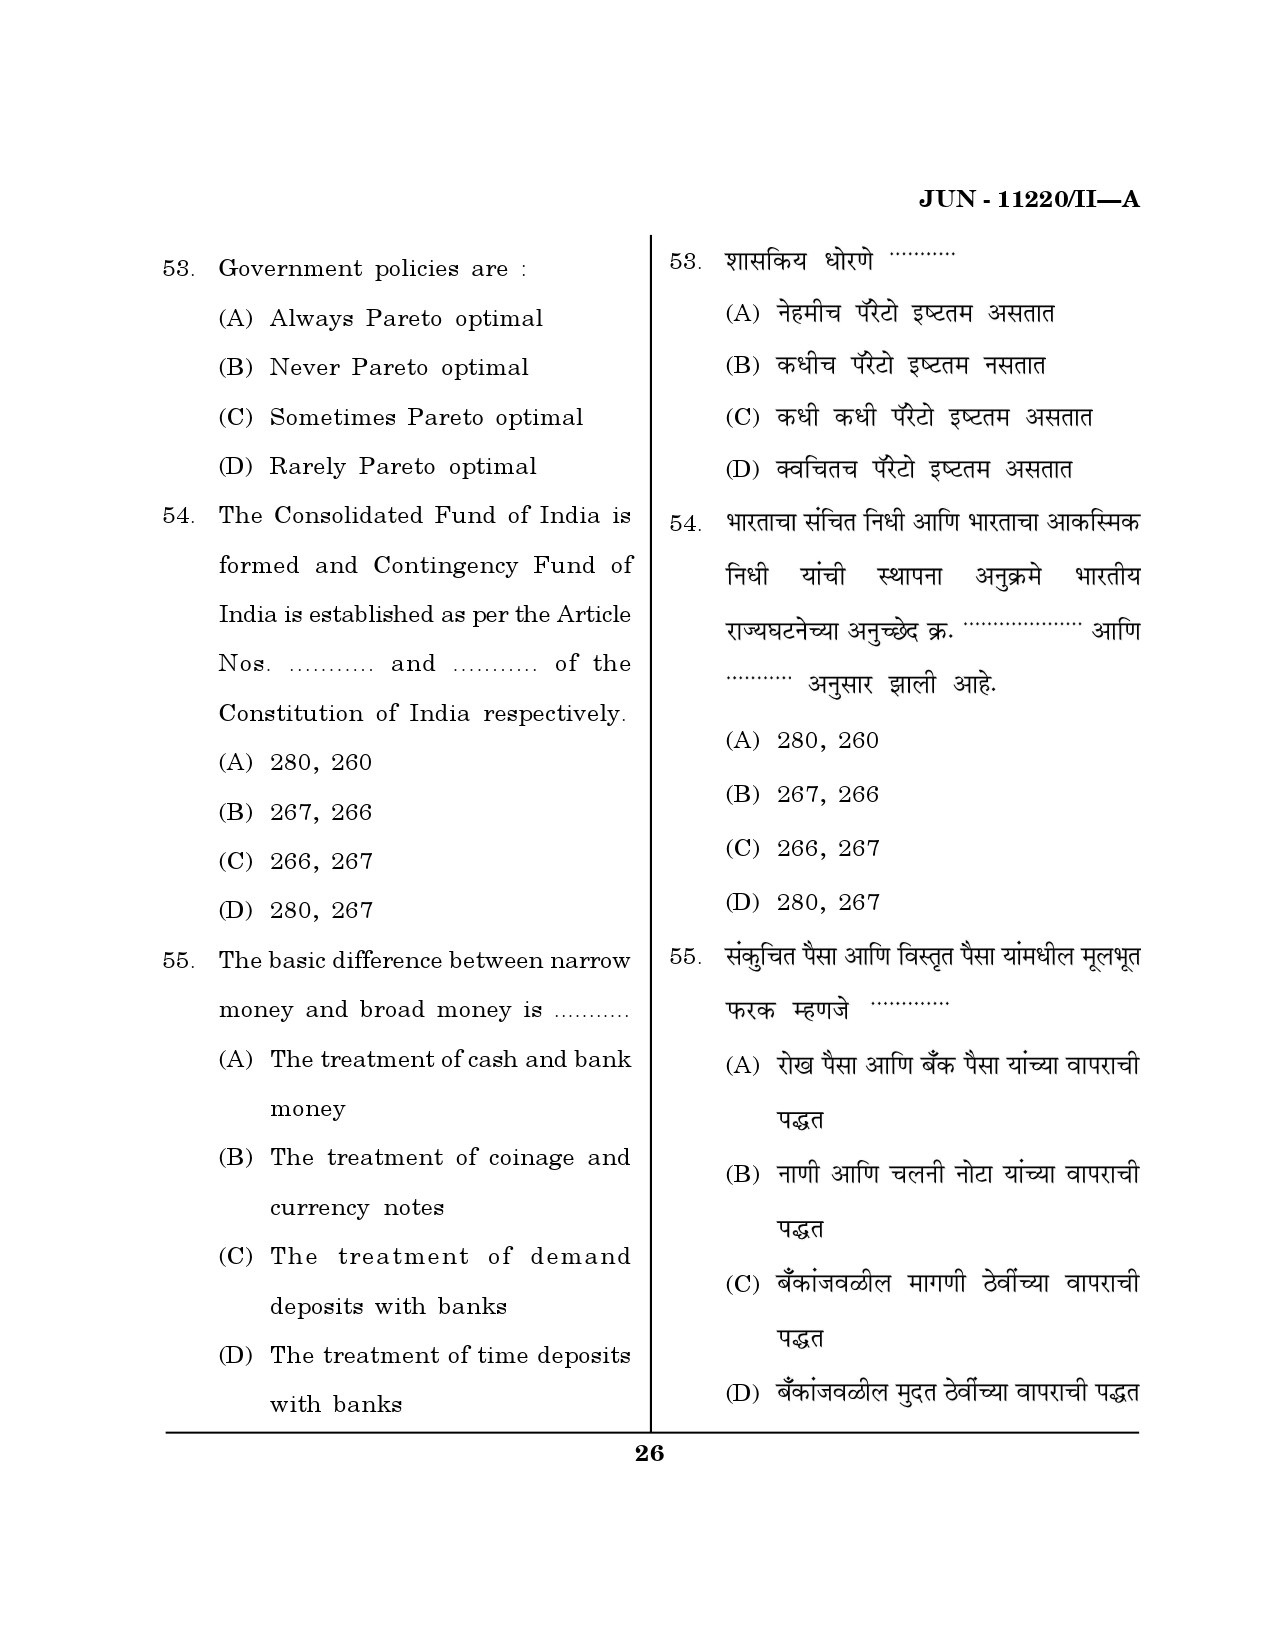 Maharashtra SET Economics Question Paper II June 2020 25